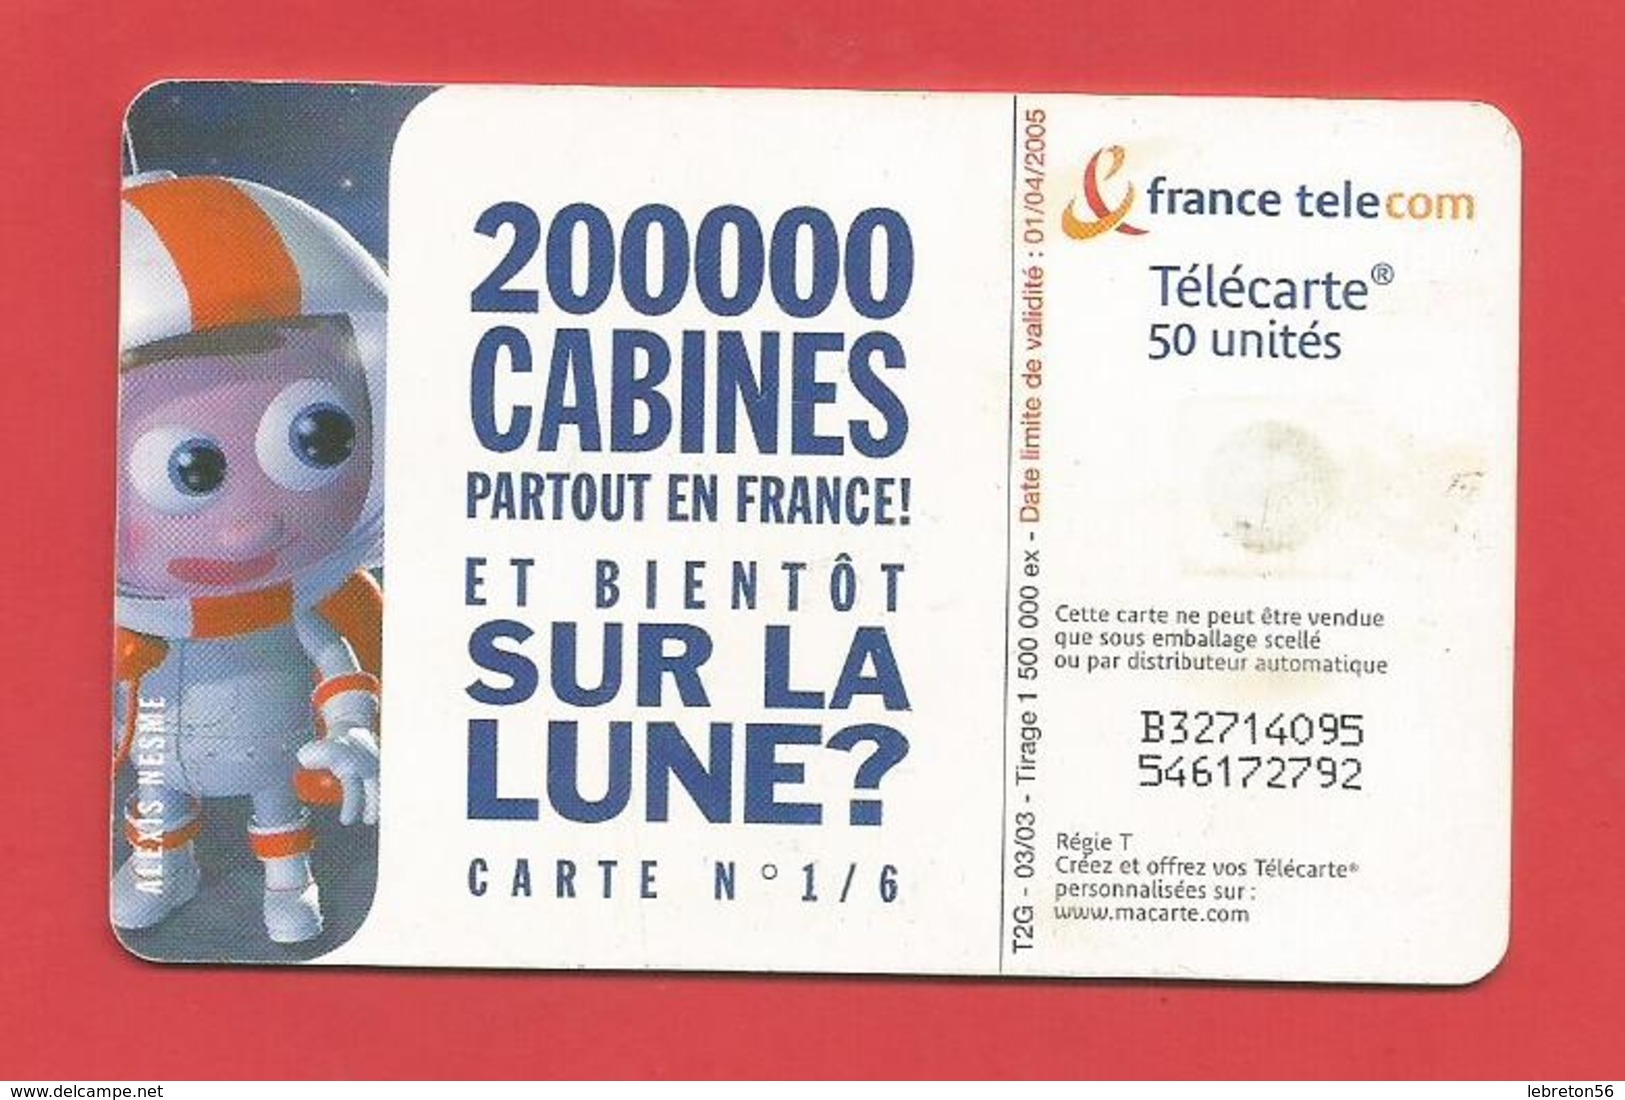 TELECARTE 50 U TIRAGE 1500 000 EX 200000 Cabines Partout En France N°1/6 X 2 Scans - Opérateurs Télécom